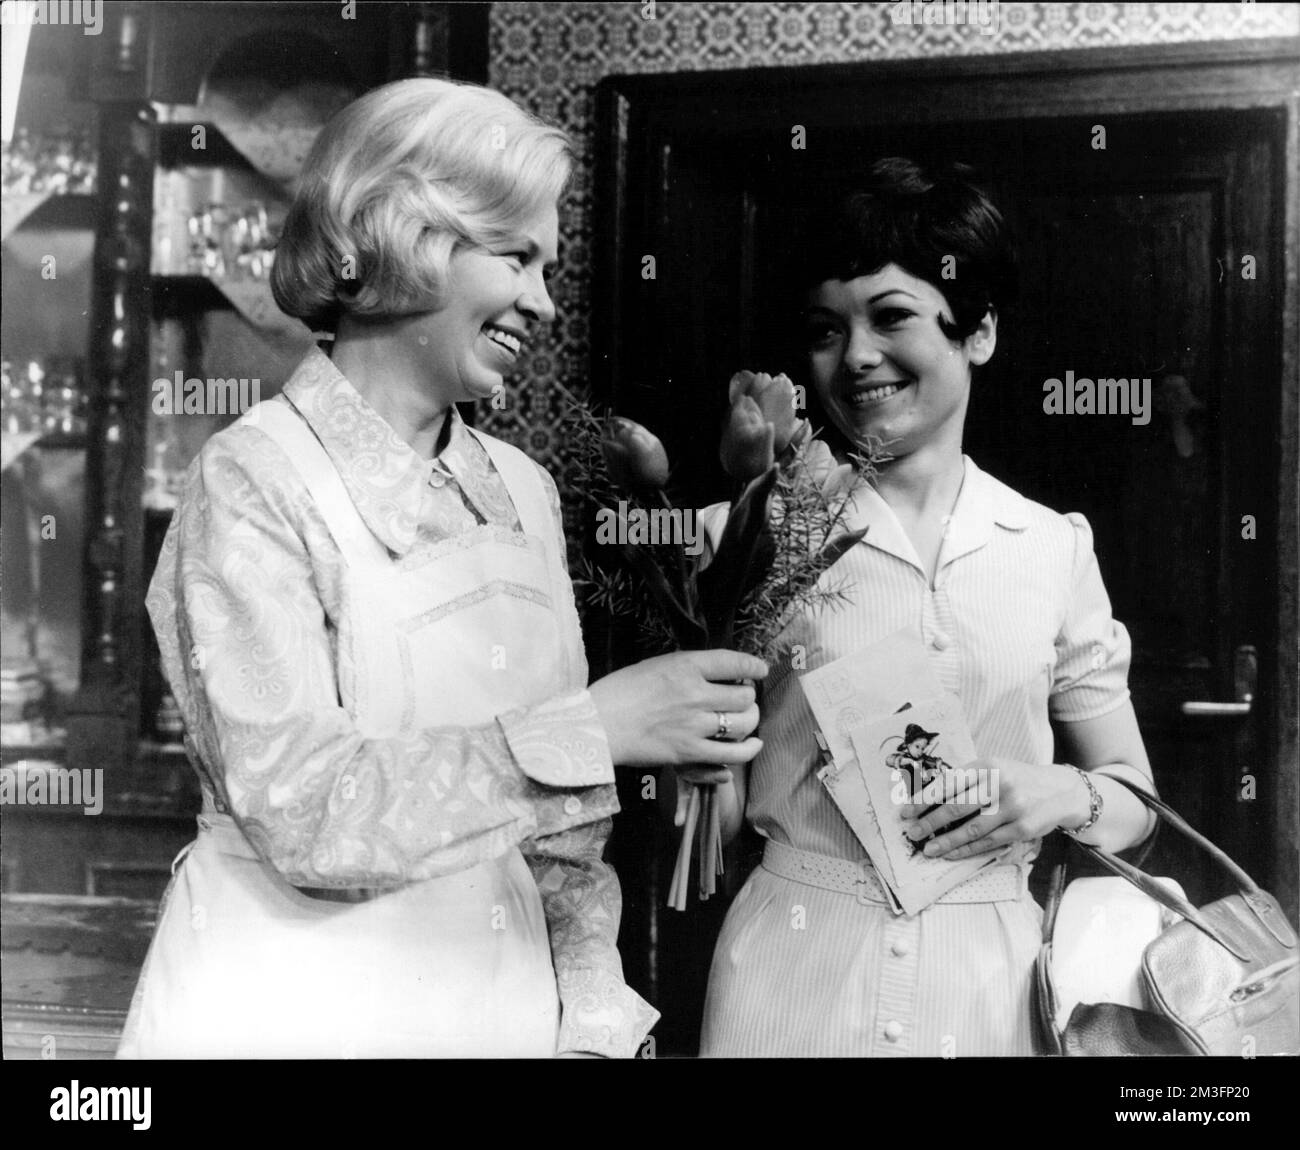 Ohnsorg-Theater 'Mein Mann der fährt zur See' - Mary (Christa Wehling, l.) bekommt von Ulli Stichling (Herma Koehn) zum Geburtstag einen Blumenstrauss, aber das ist nicht die einzige Überraschung an diesem Tage ... Foto Stock